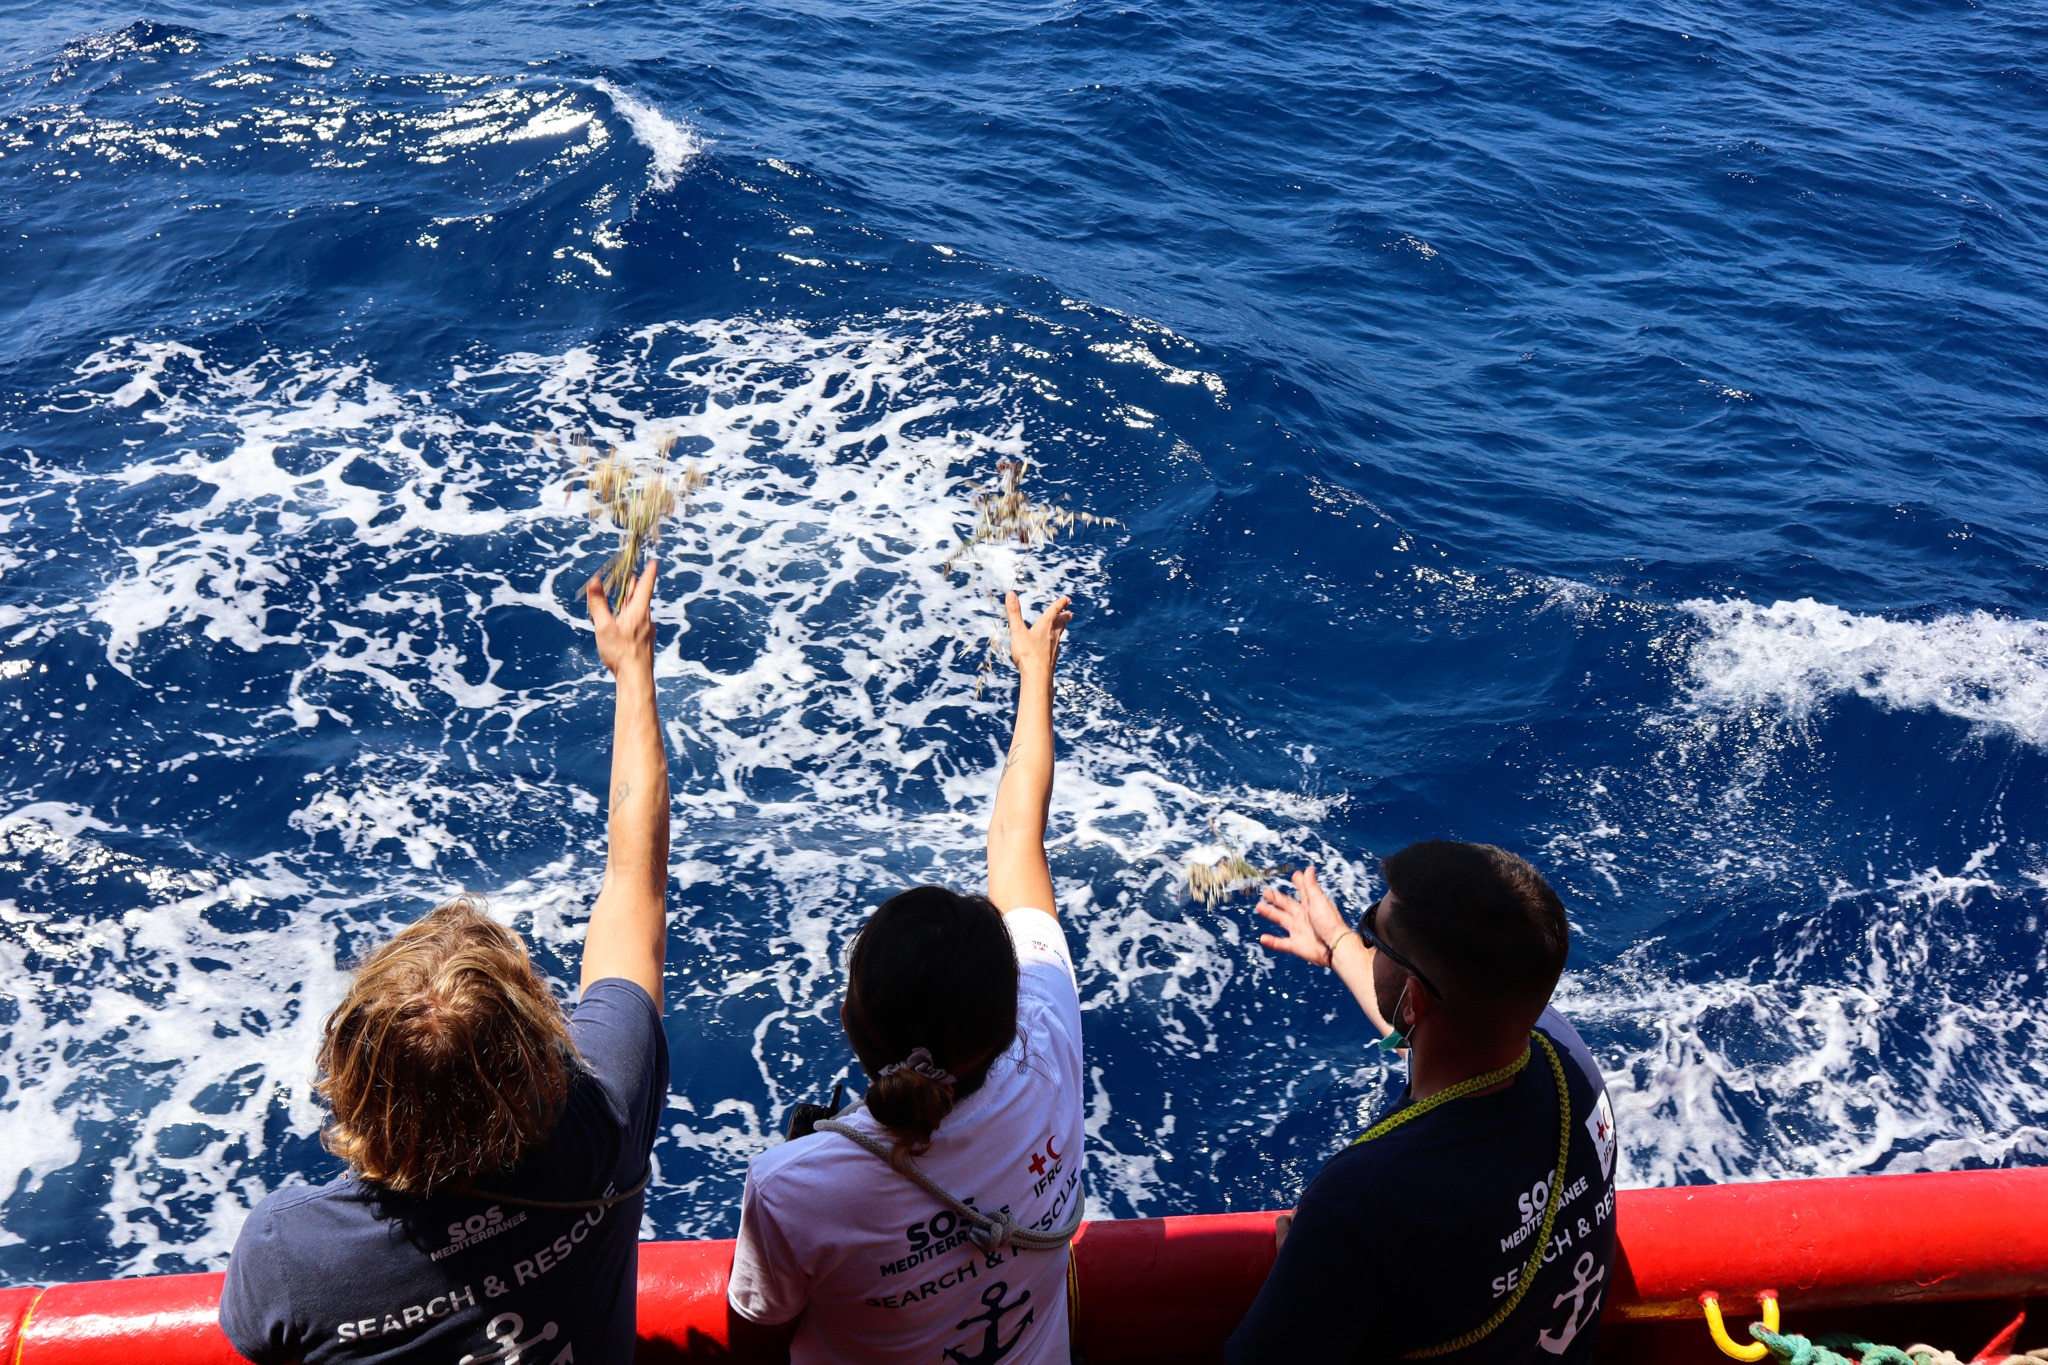 Lancer de fleurs à bord de l'Ocean Viking, en mémoire d'une donatrice décédée.<br />
Crédits : Claire Juchat / SOS MEDITERRANEE 